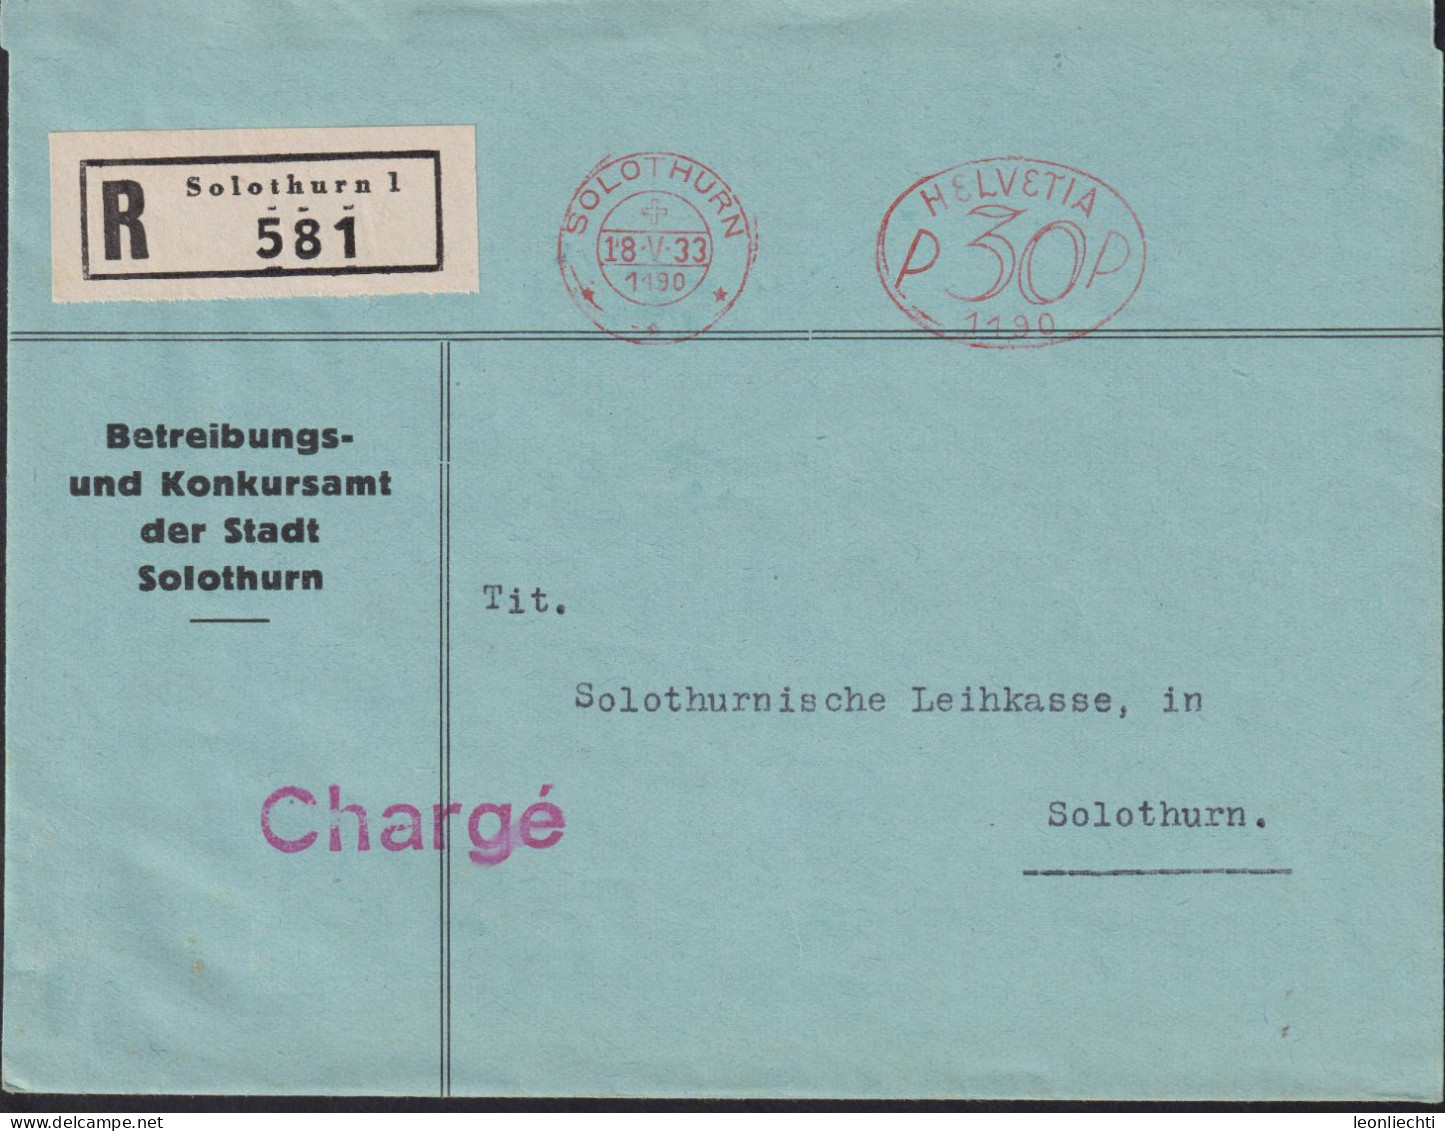 1933 Schweiz, R-Brief (FraMA)  Solothurn + HELVETIA P 30 1190, Betreibungs U. Konkursamt Der Stadt Solothurn - Affranchissements Mécaniques